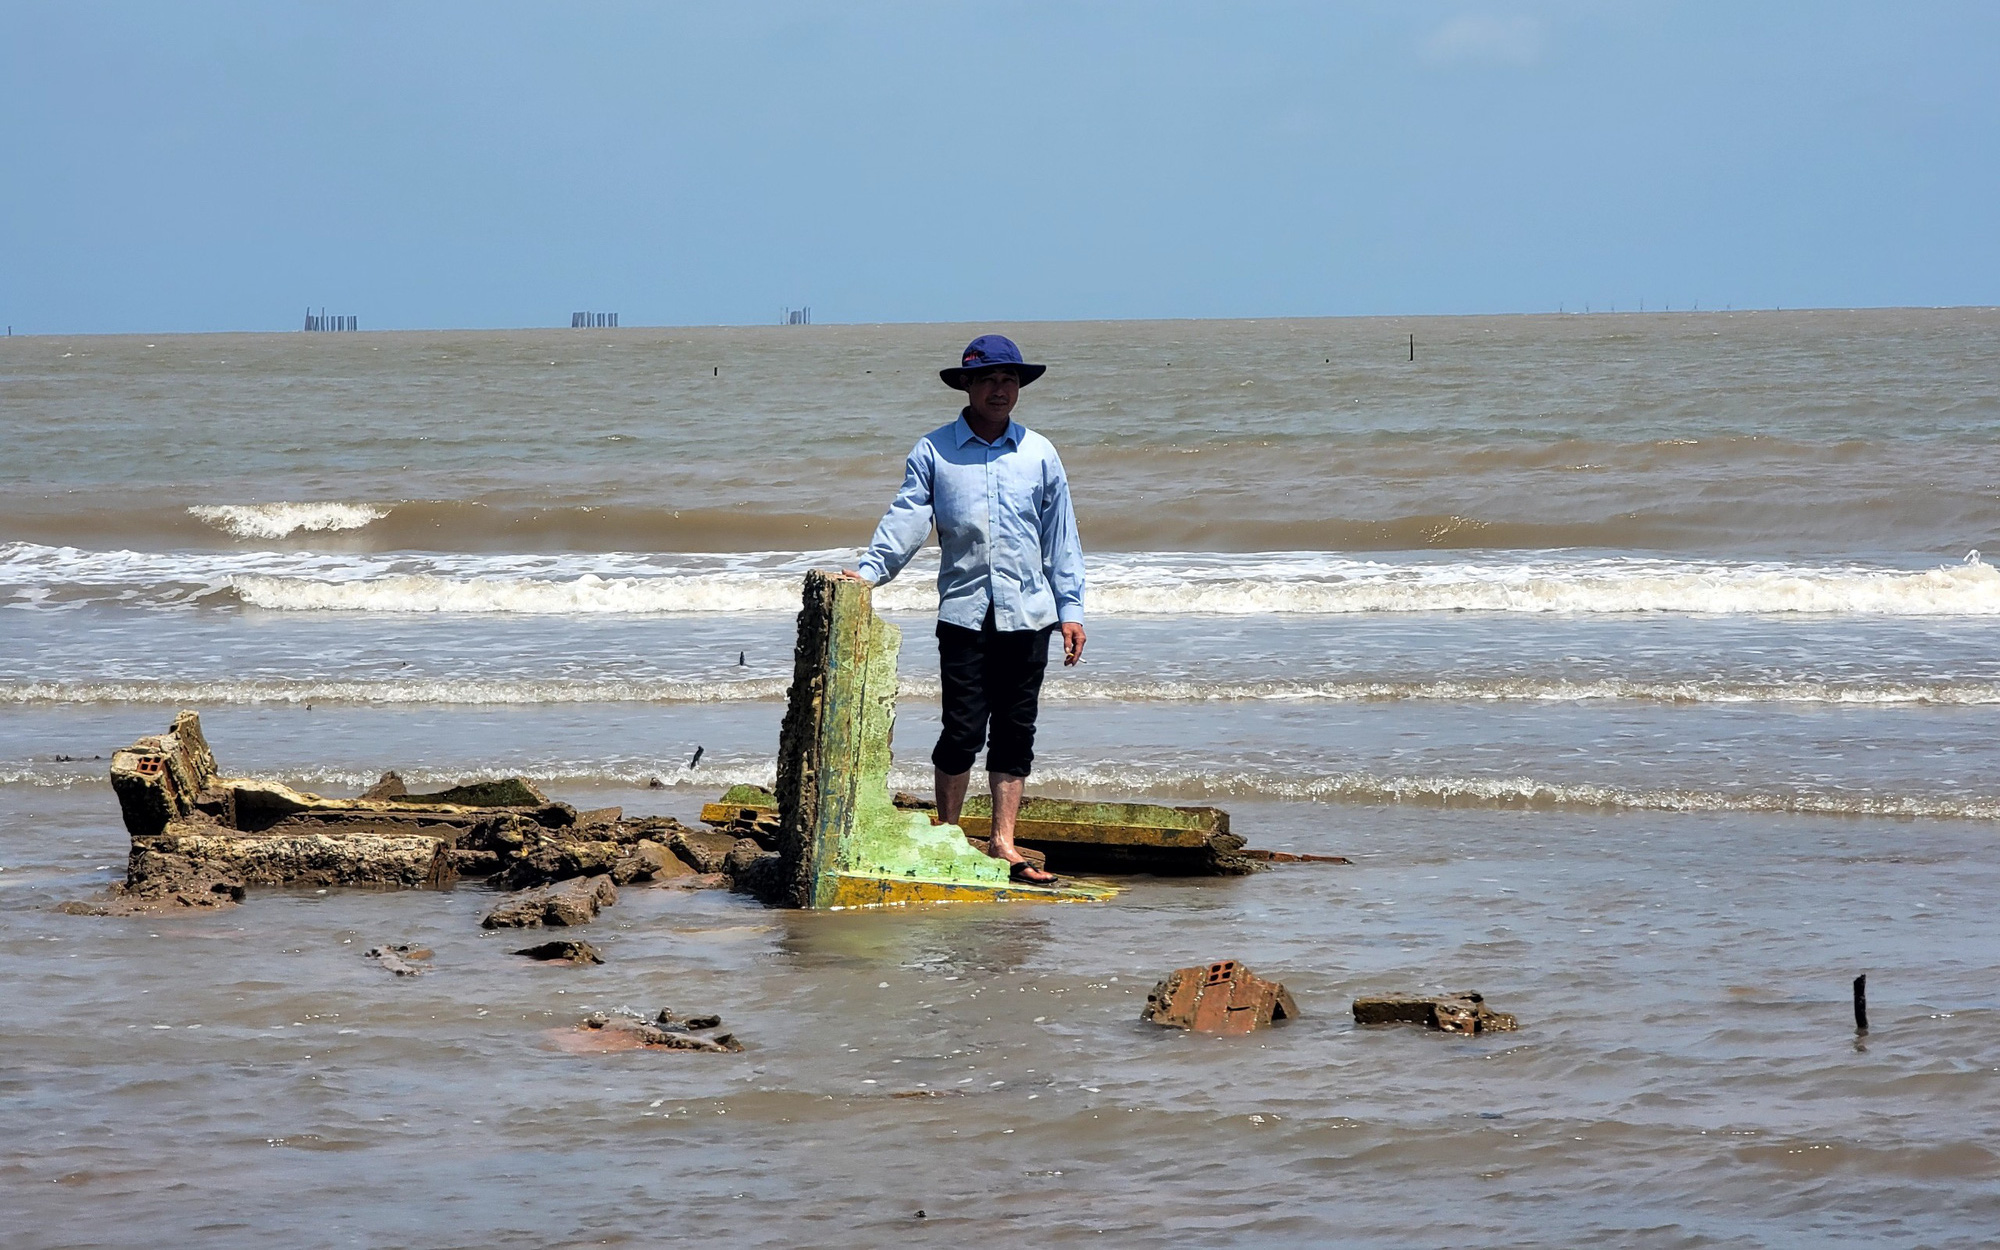 Làng ‘chạy lùi’ né sạt lở ở cửa biển Trà Vinh